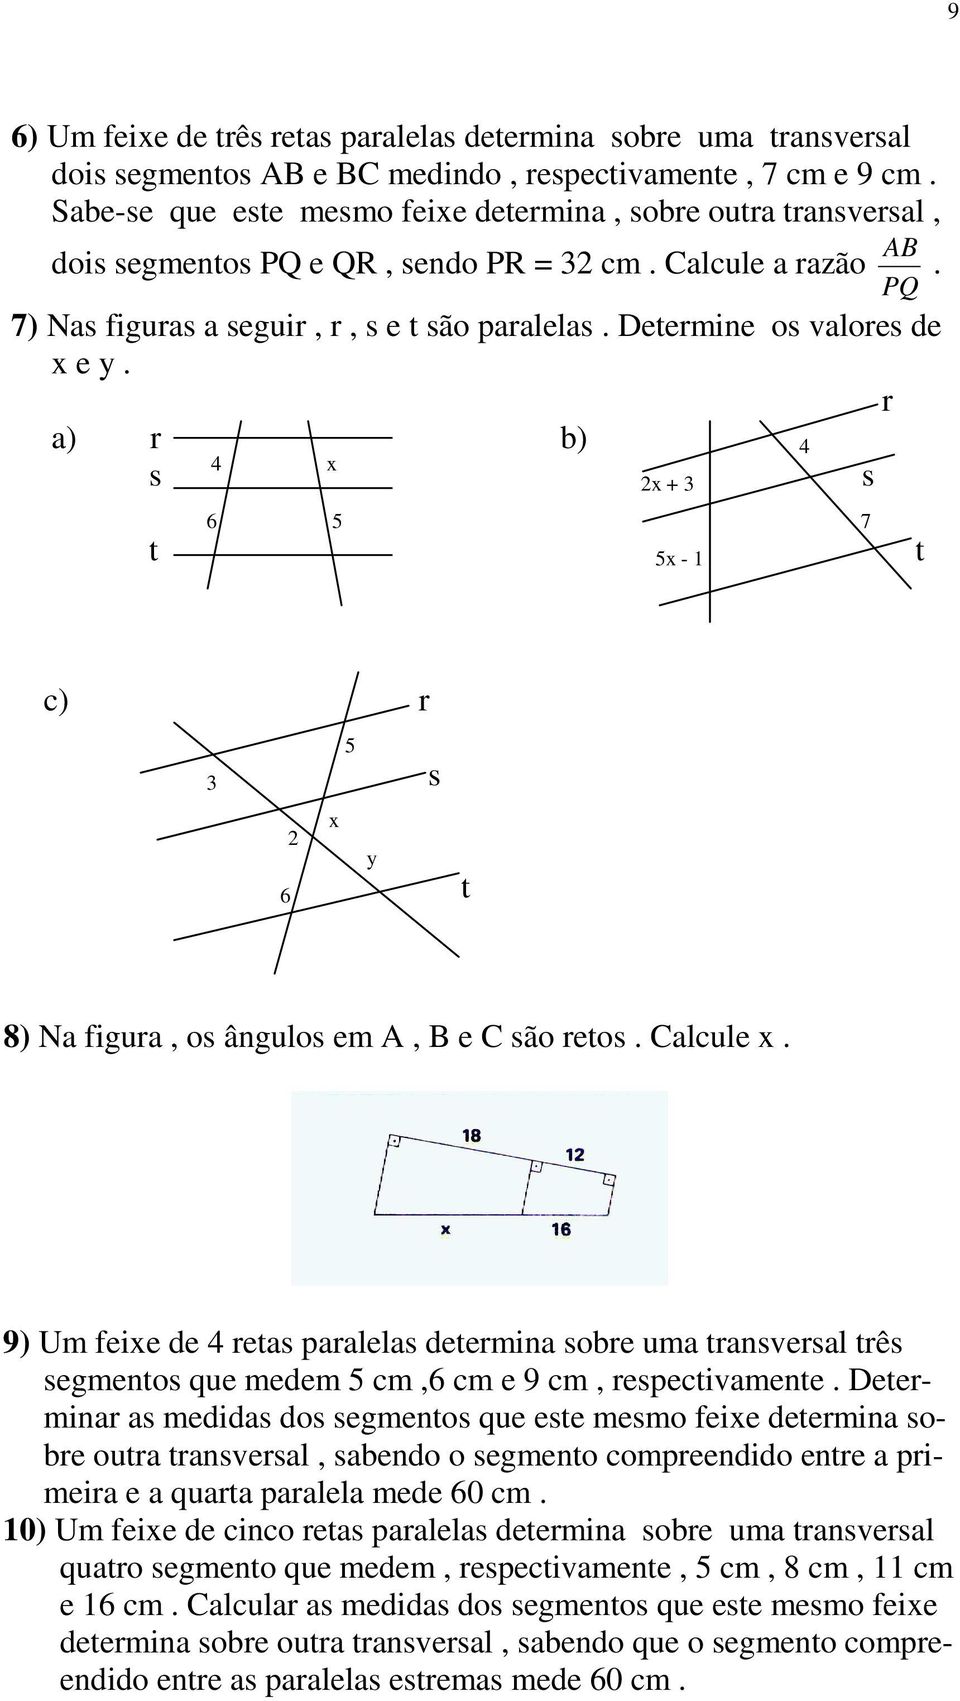 r a) r b) 4 4 x s s 2x + 3 6 5 7 t 5x - 1 t c) r 5 3 s x 2 y 6 t 8) Na figura, os ângulos em, e são retos. alcule x.